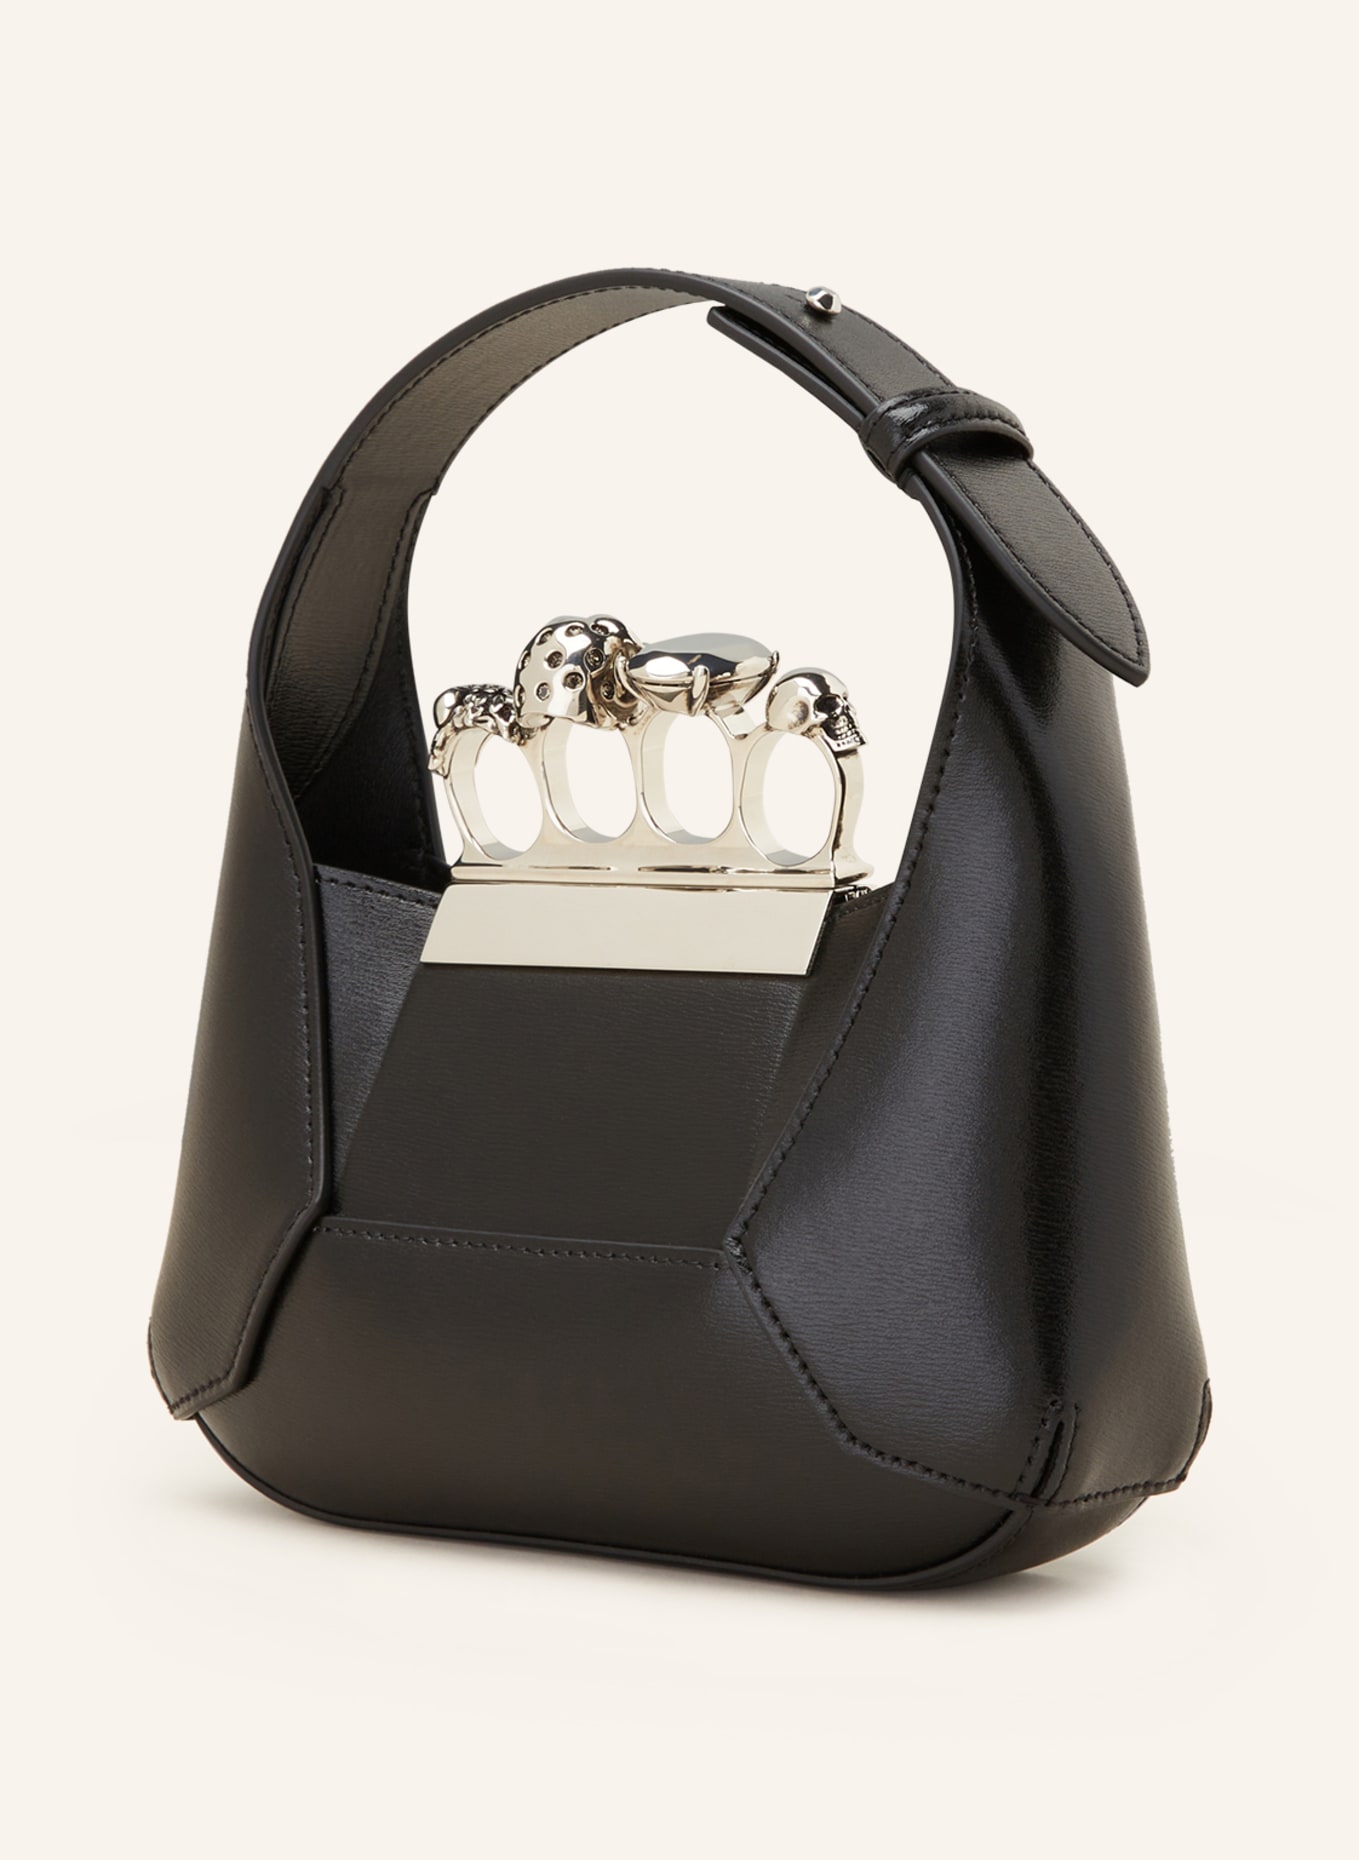 The Jewelled Hobo Mini Bag in Black